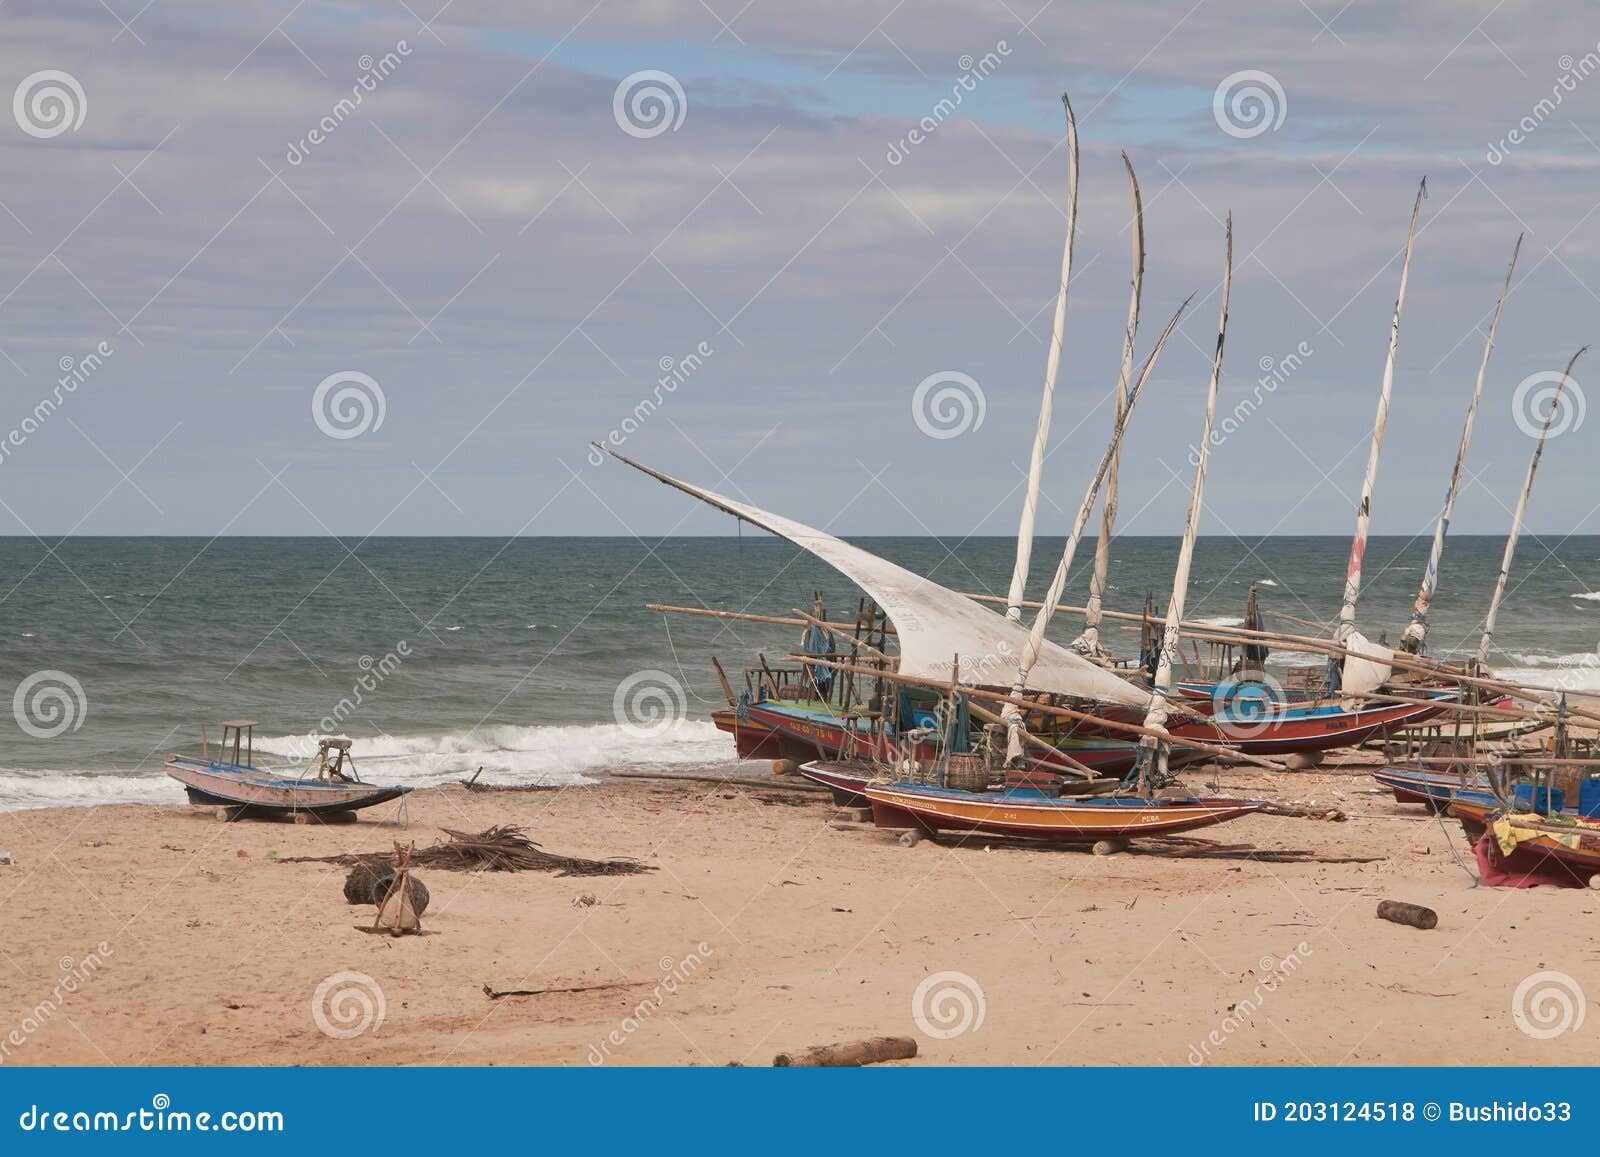 traditional fishing boats . praia das fontes